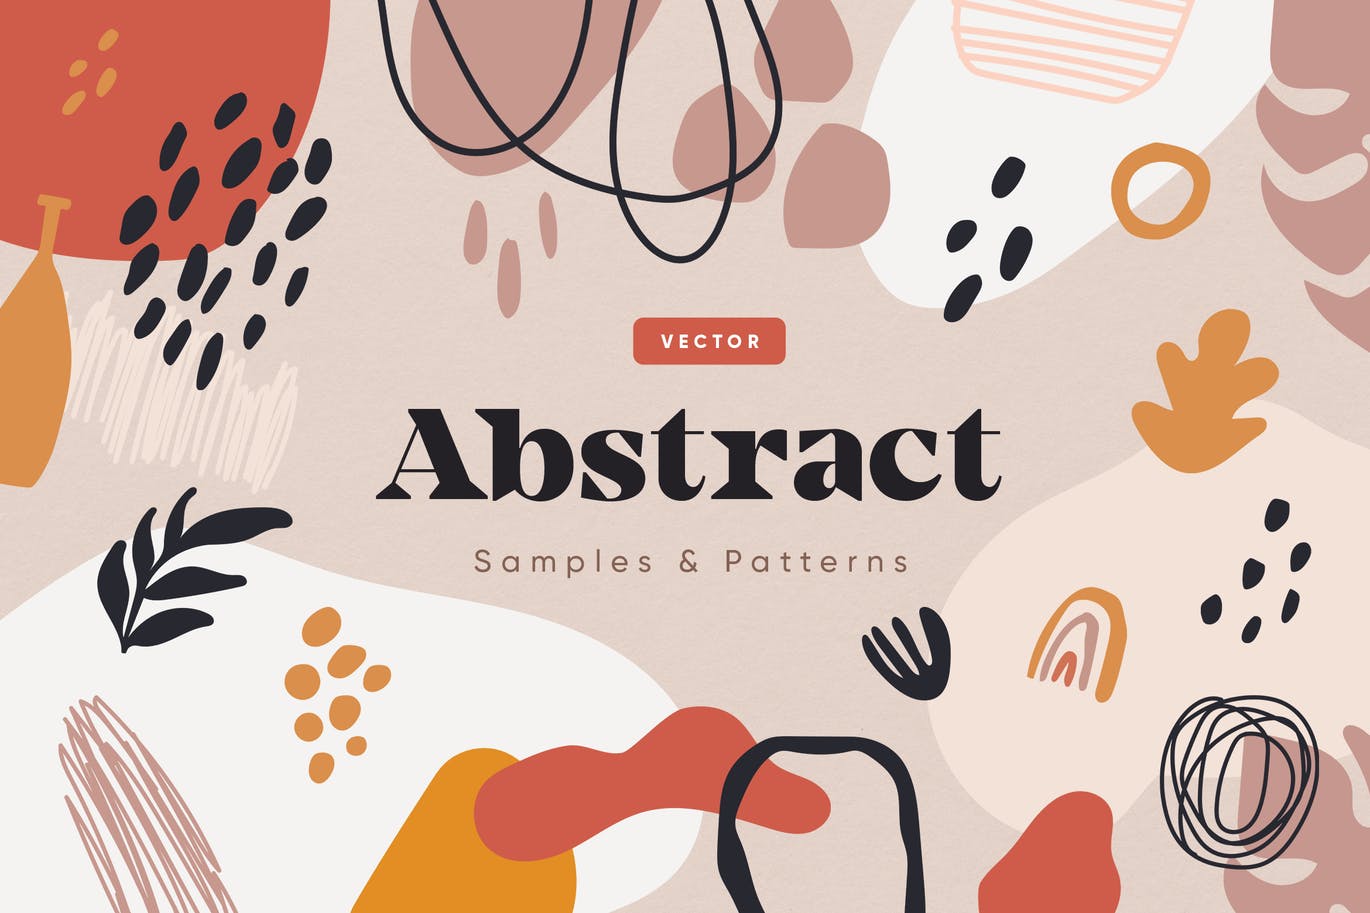 抽象形状和图案背景素材 Abstract Samples & Patterns 图片素材 第1张